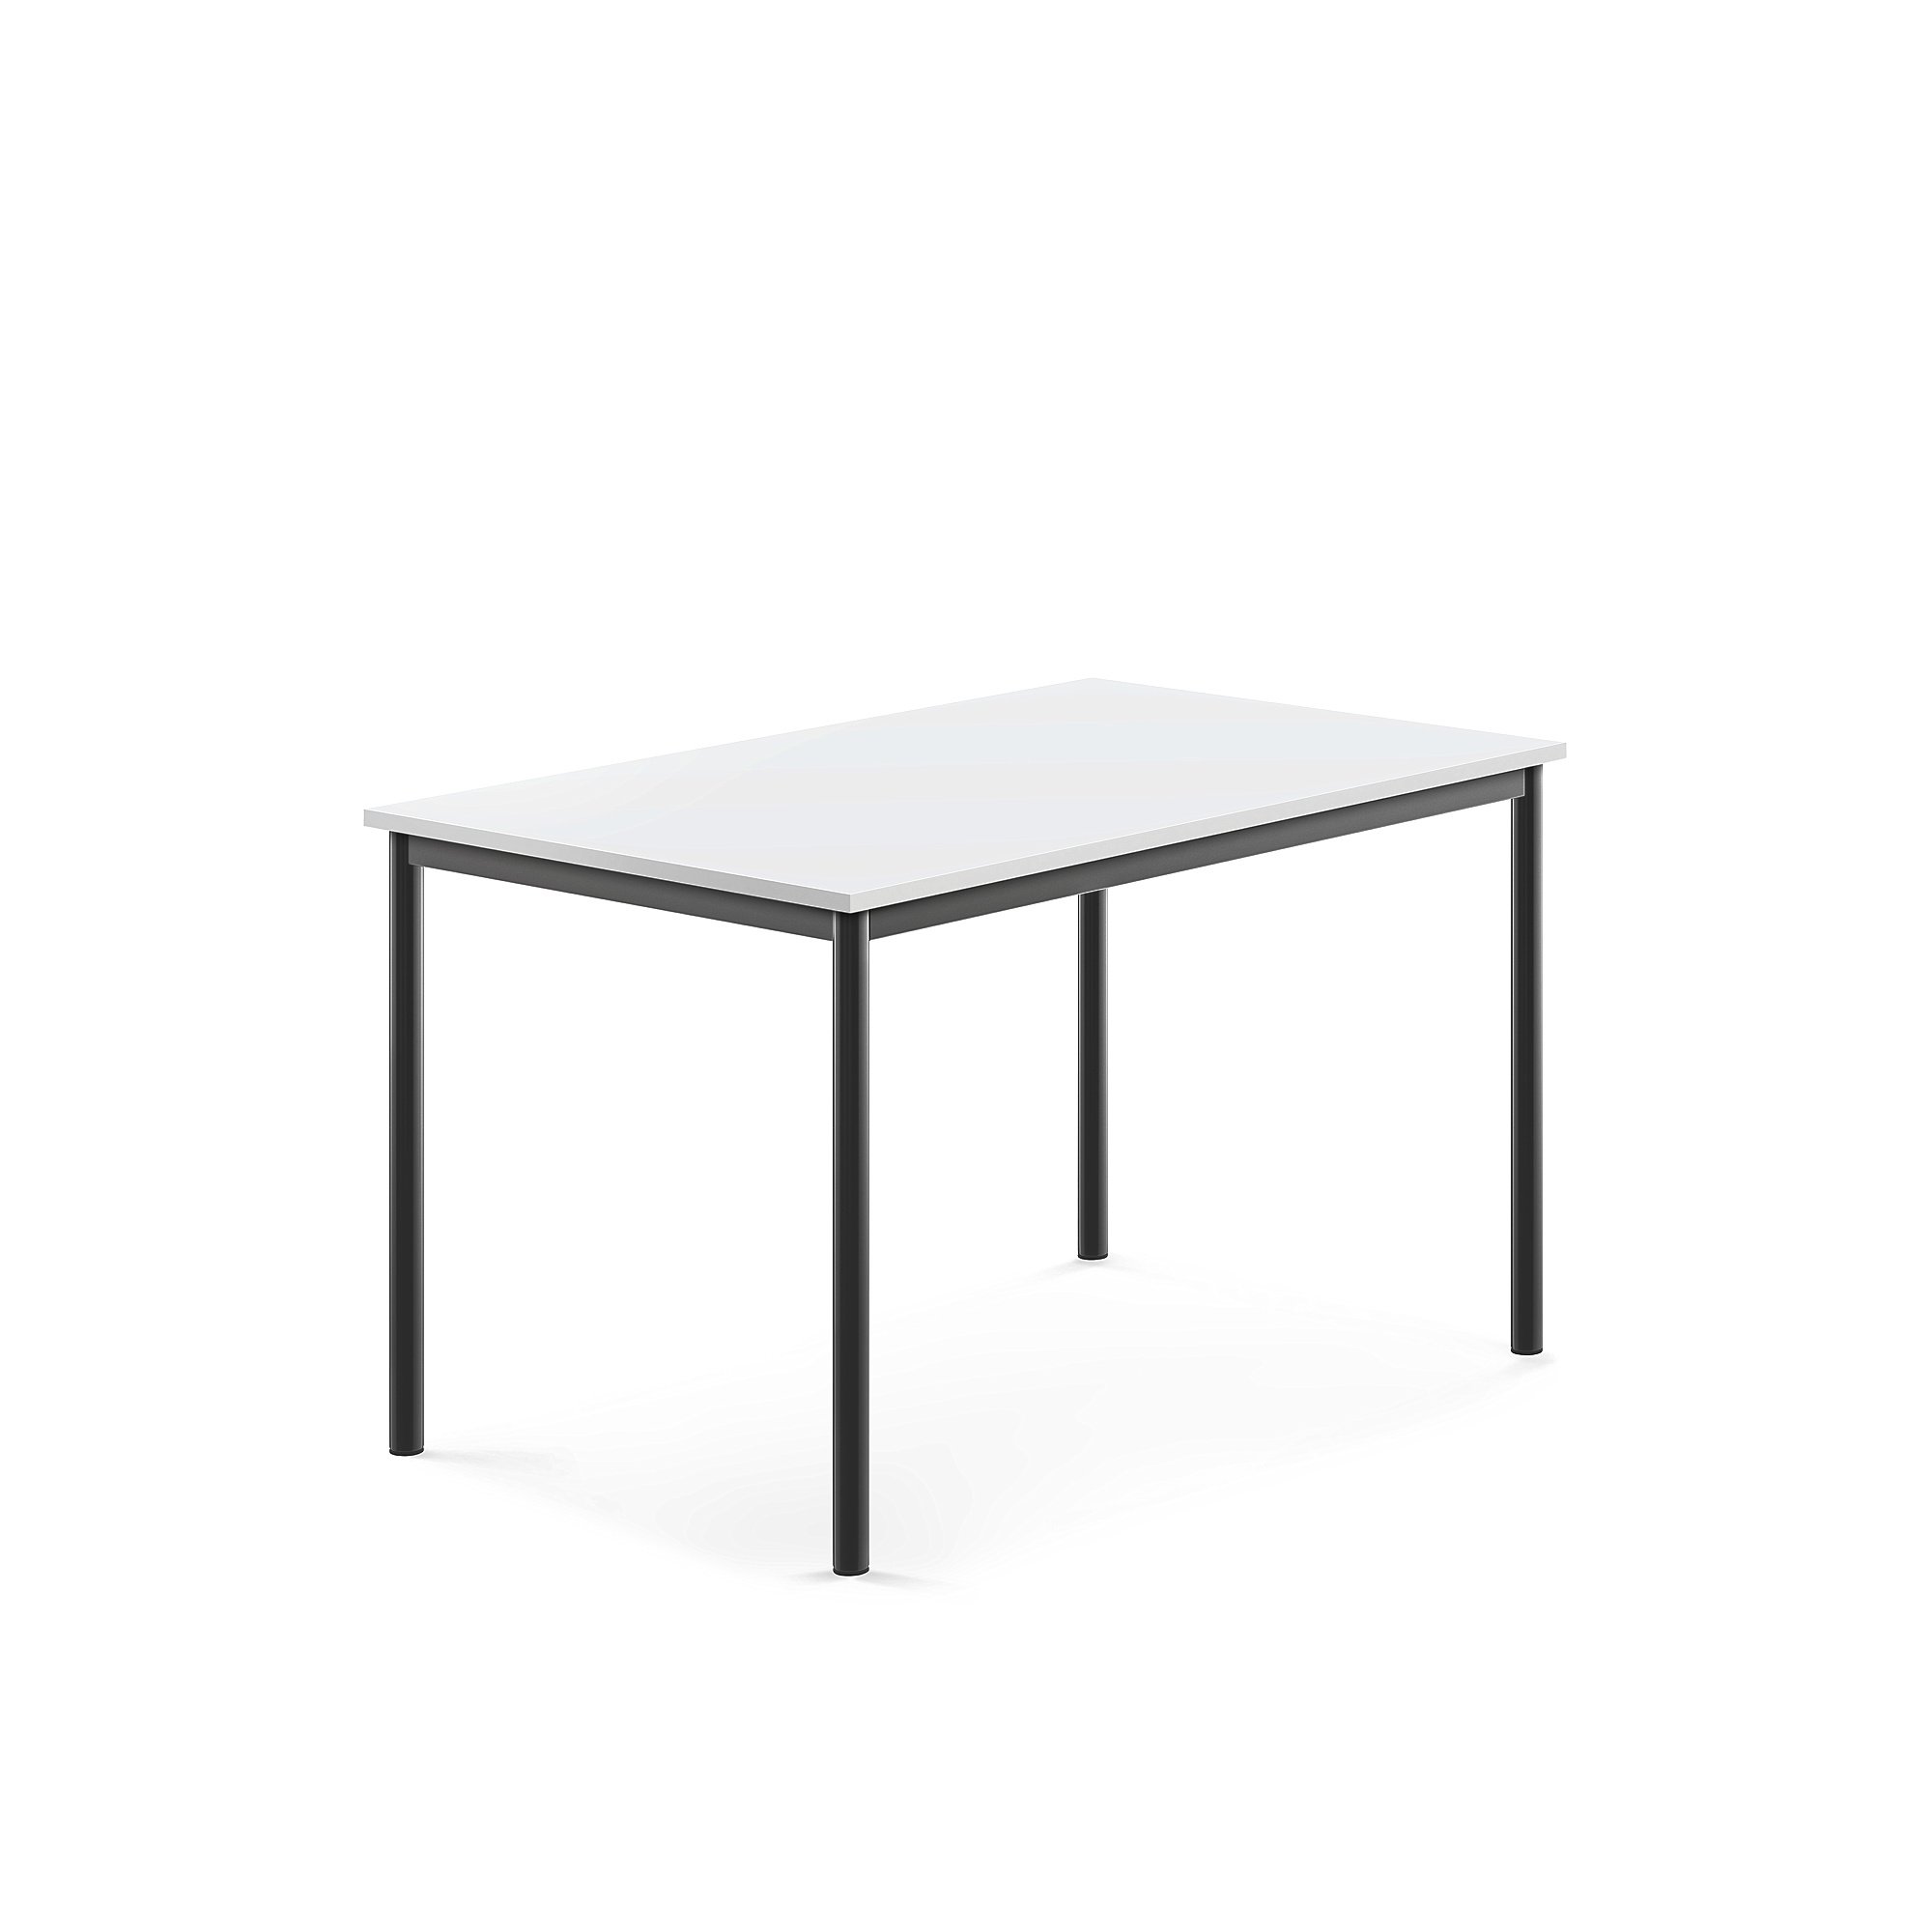 Stůl SONITUS, 1200x800x720 mm, antracitově šedé nohy, HPL deska tlumící hluk, bílá